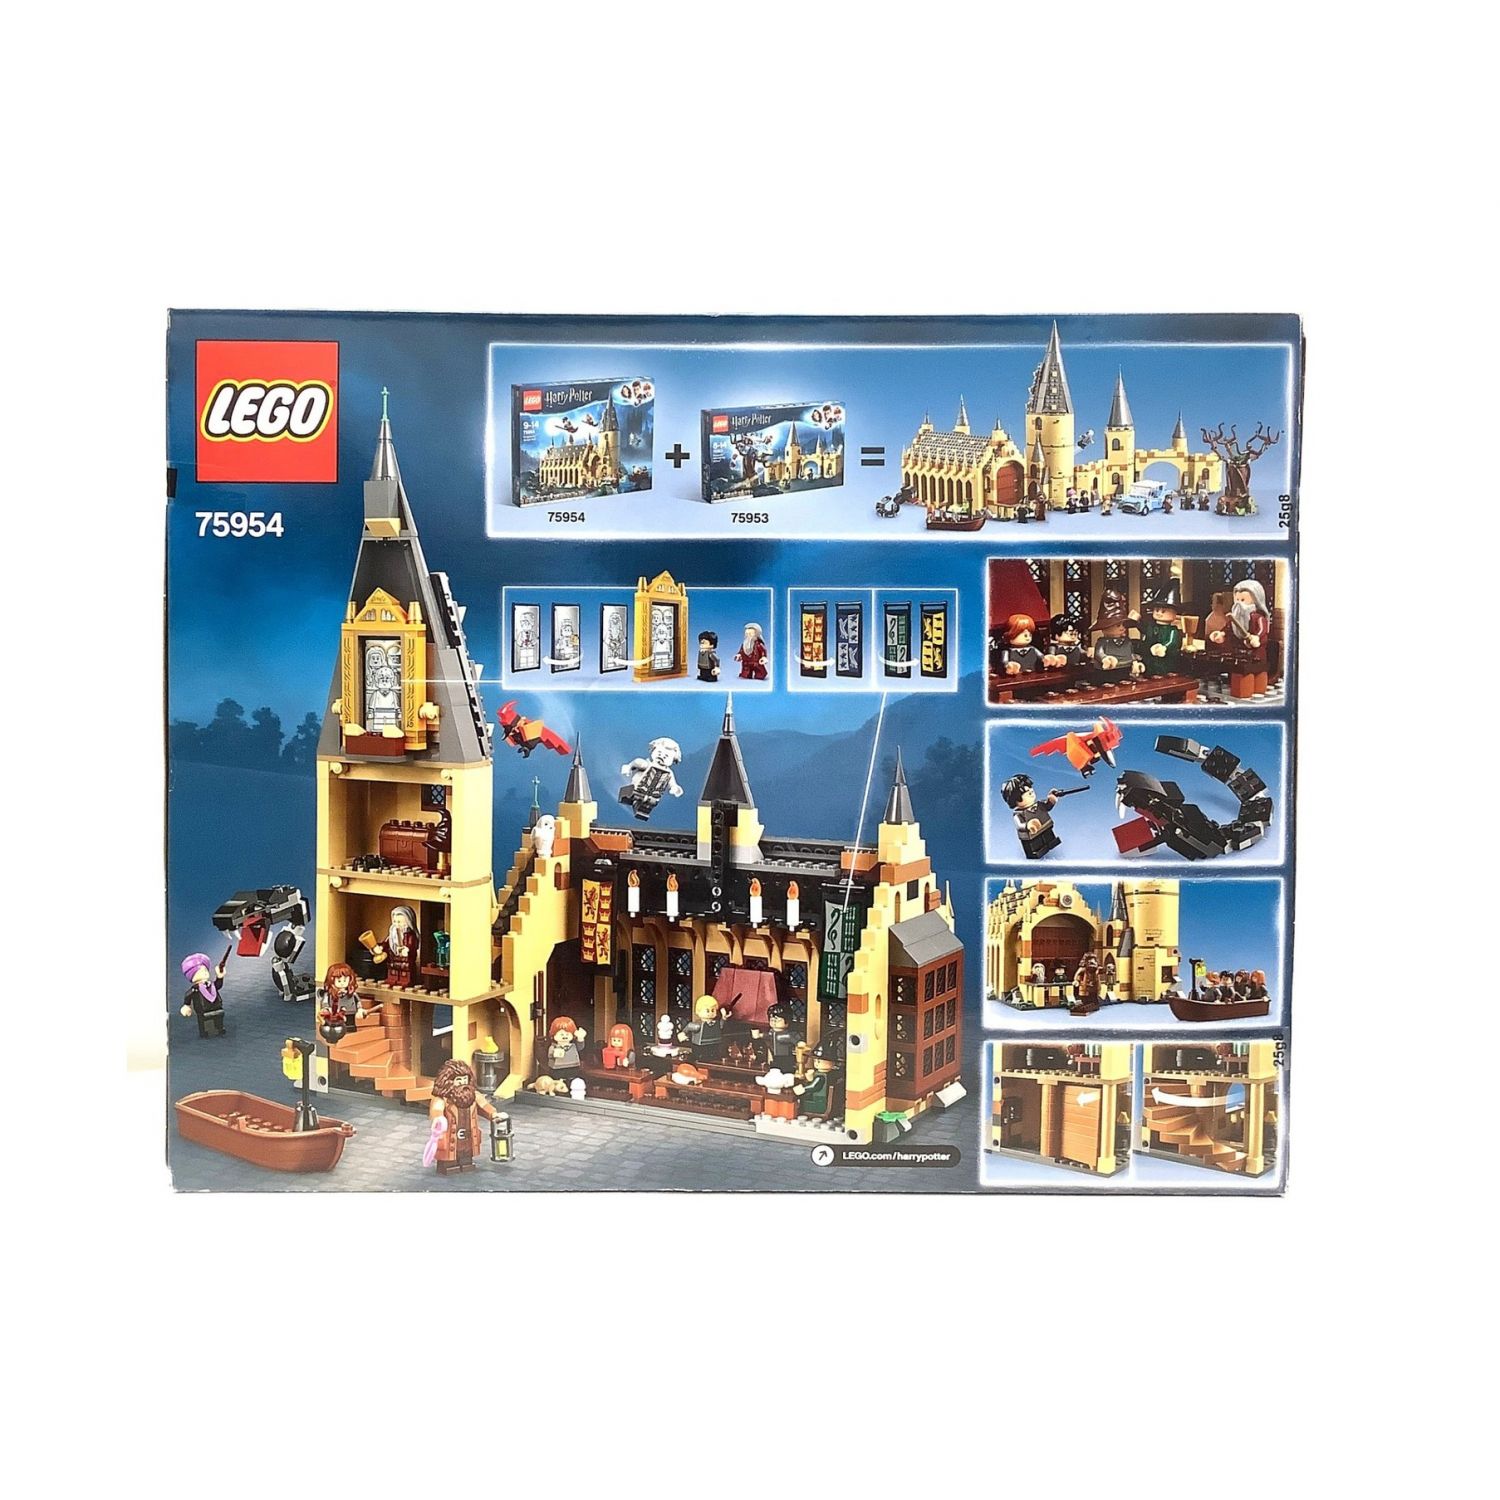 LEGO (レゴ) レゴブロック 未開封品 ホグワーツの大広間 ハリー